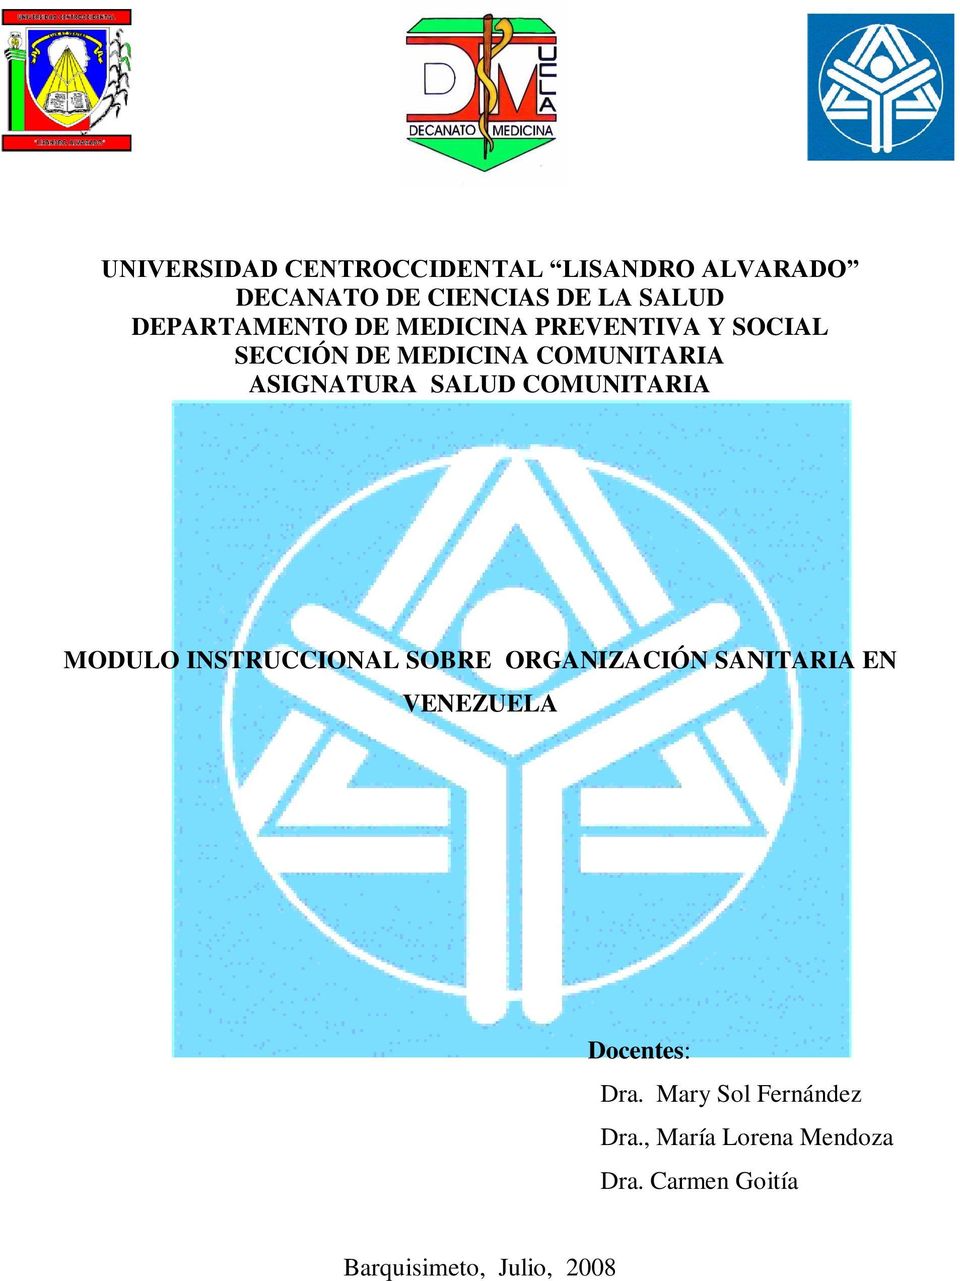 SALUD COMUNITARIA MODULO INSTRUCCIONAL SOBRE ORGANIZACIÓN SANITARIA EN VENEZUELA